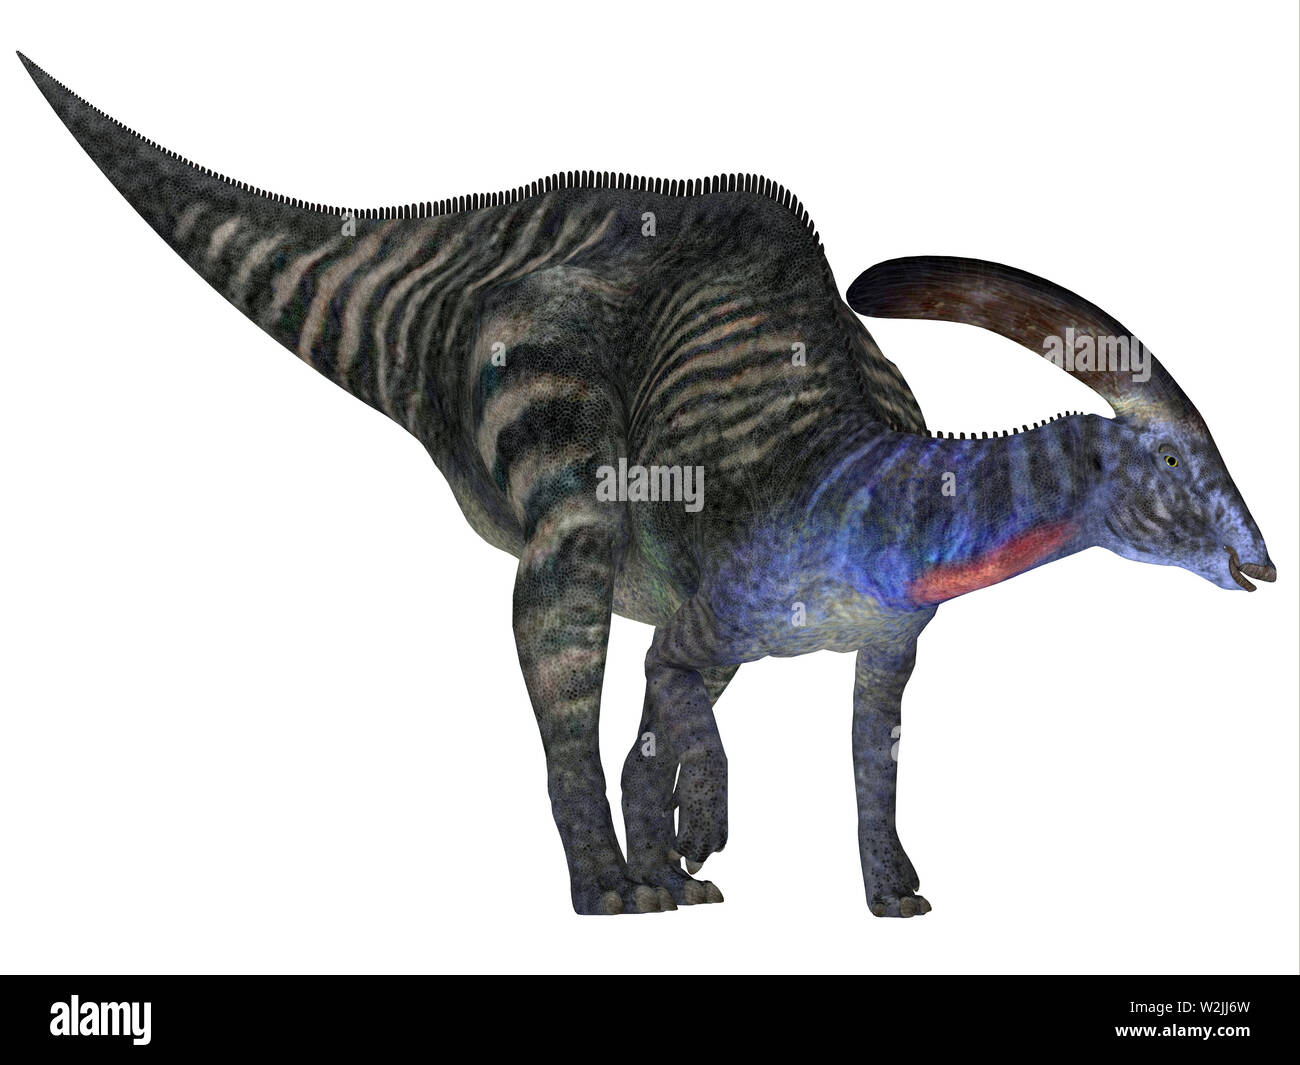 Cresta Di Dinosauro Immagini e Fotos Stock - Alamy